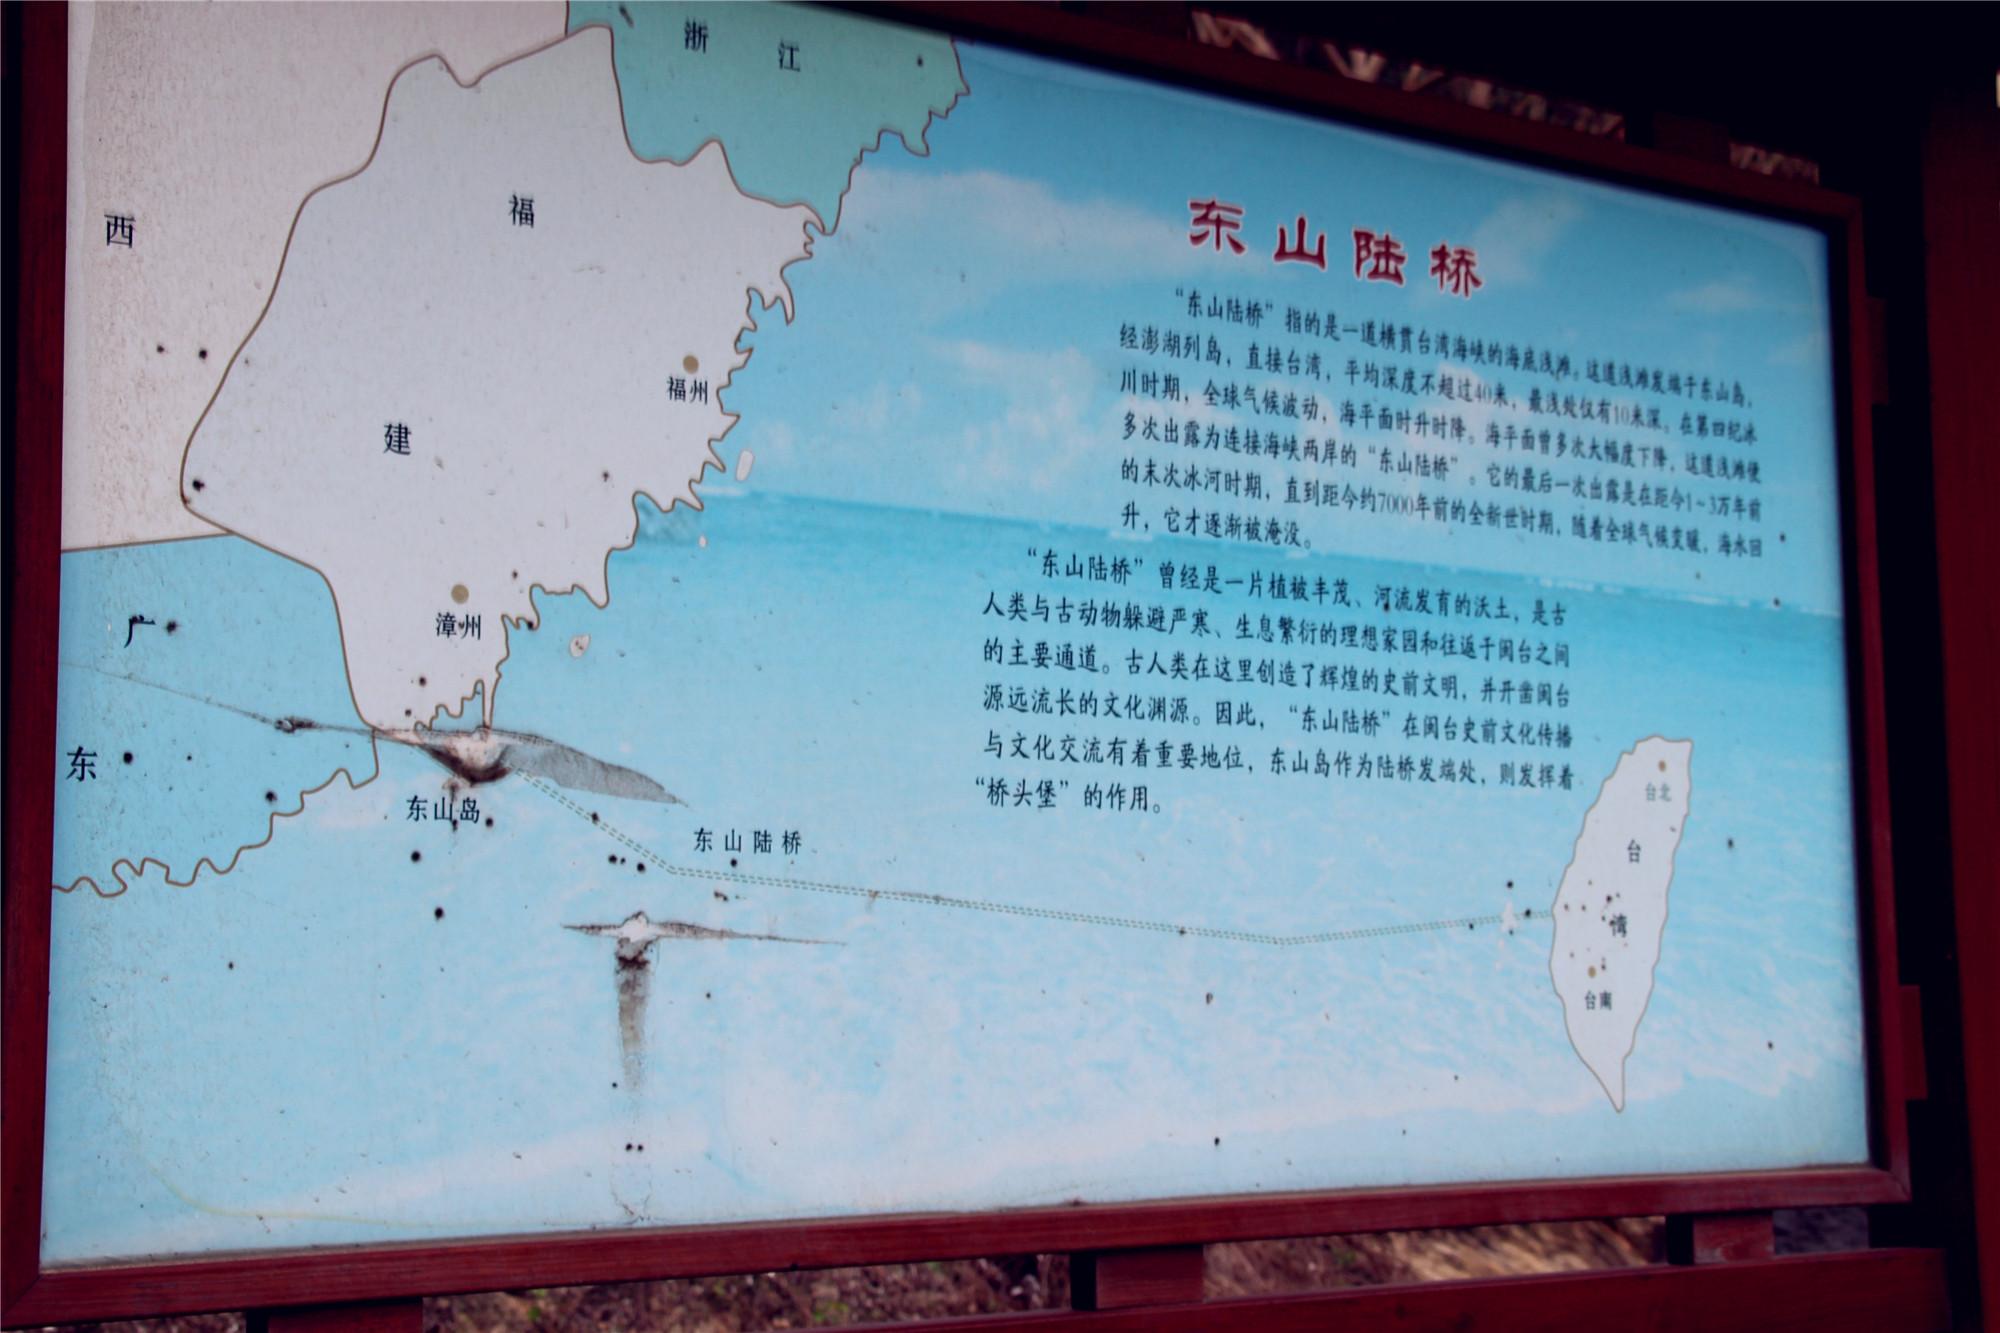 在这里第一次知道了东山陆桥,台湾海峡中有一条浅滩,从东山岛向东偏